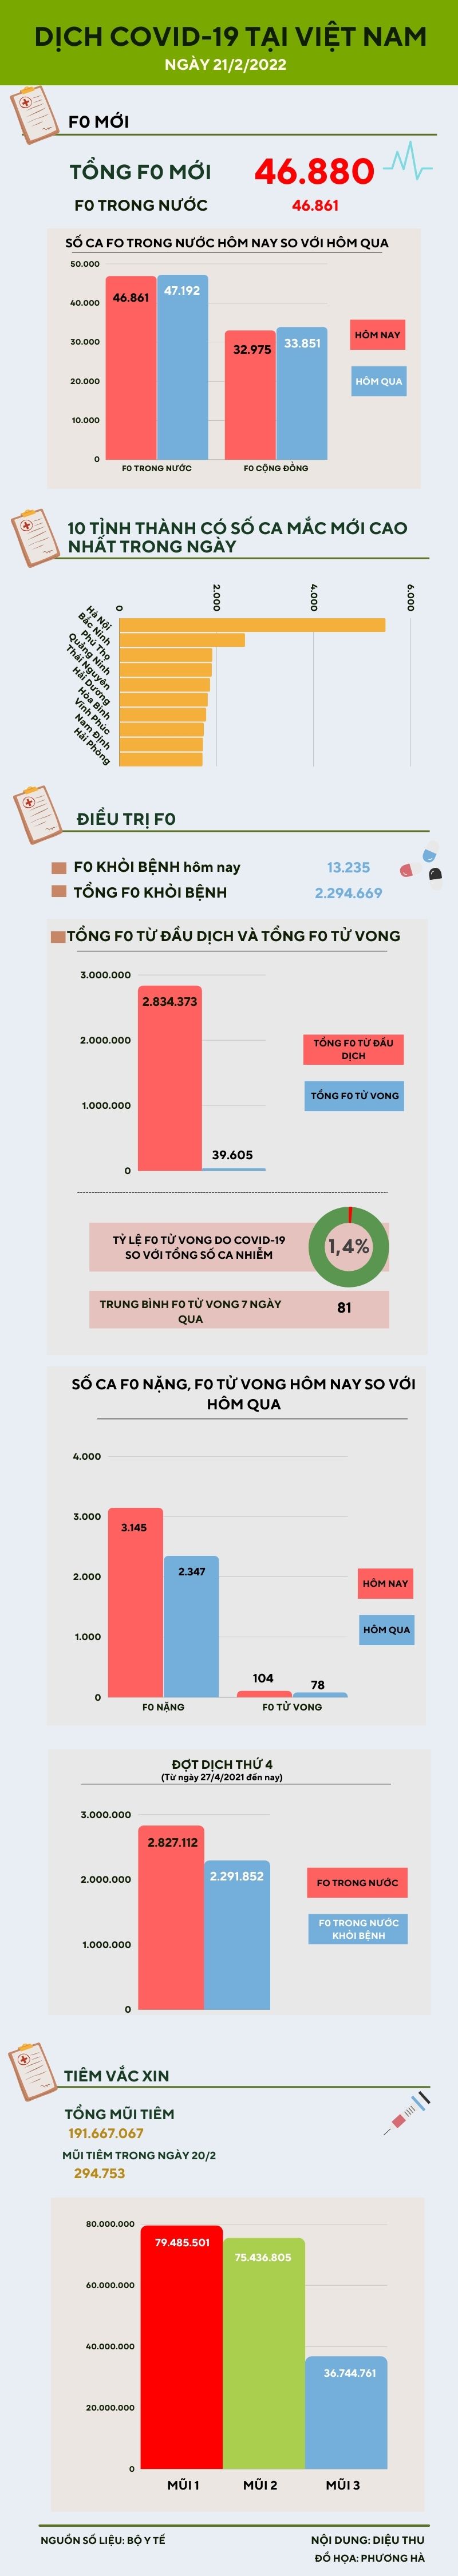 Ngày 21/2: Thêm 46.861 ca COVID-19 trong nước, riêng Hà Nội có 5.477 ca - 1